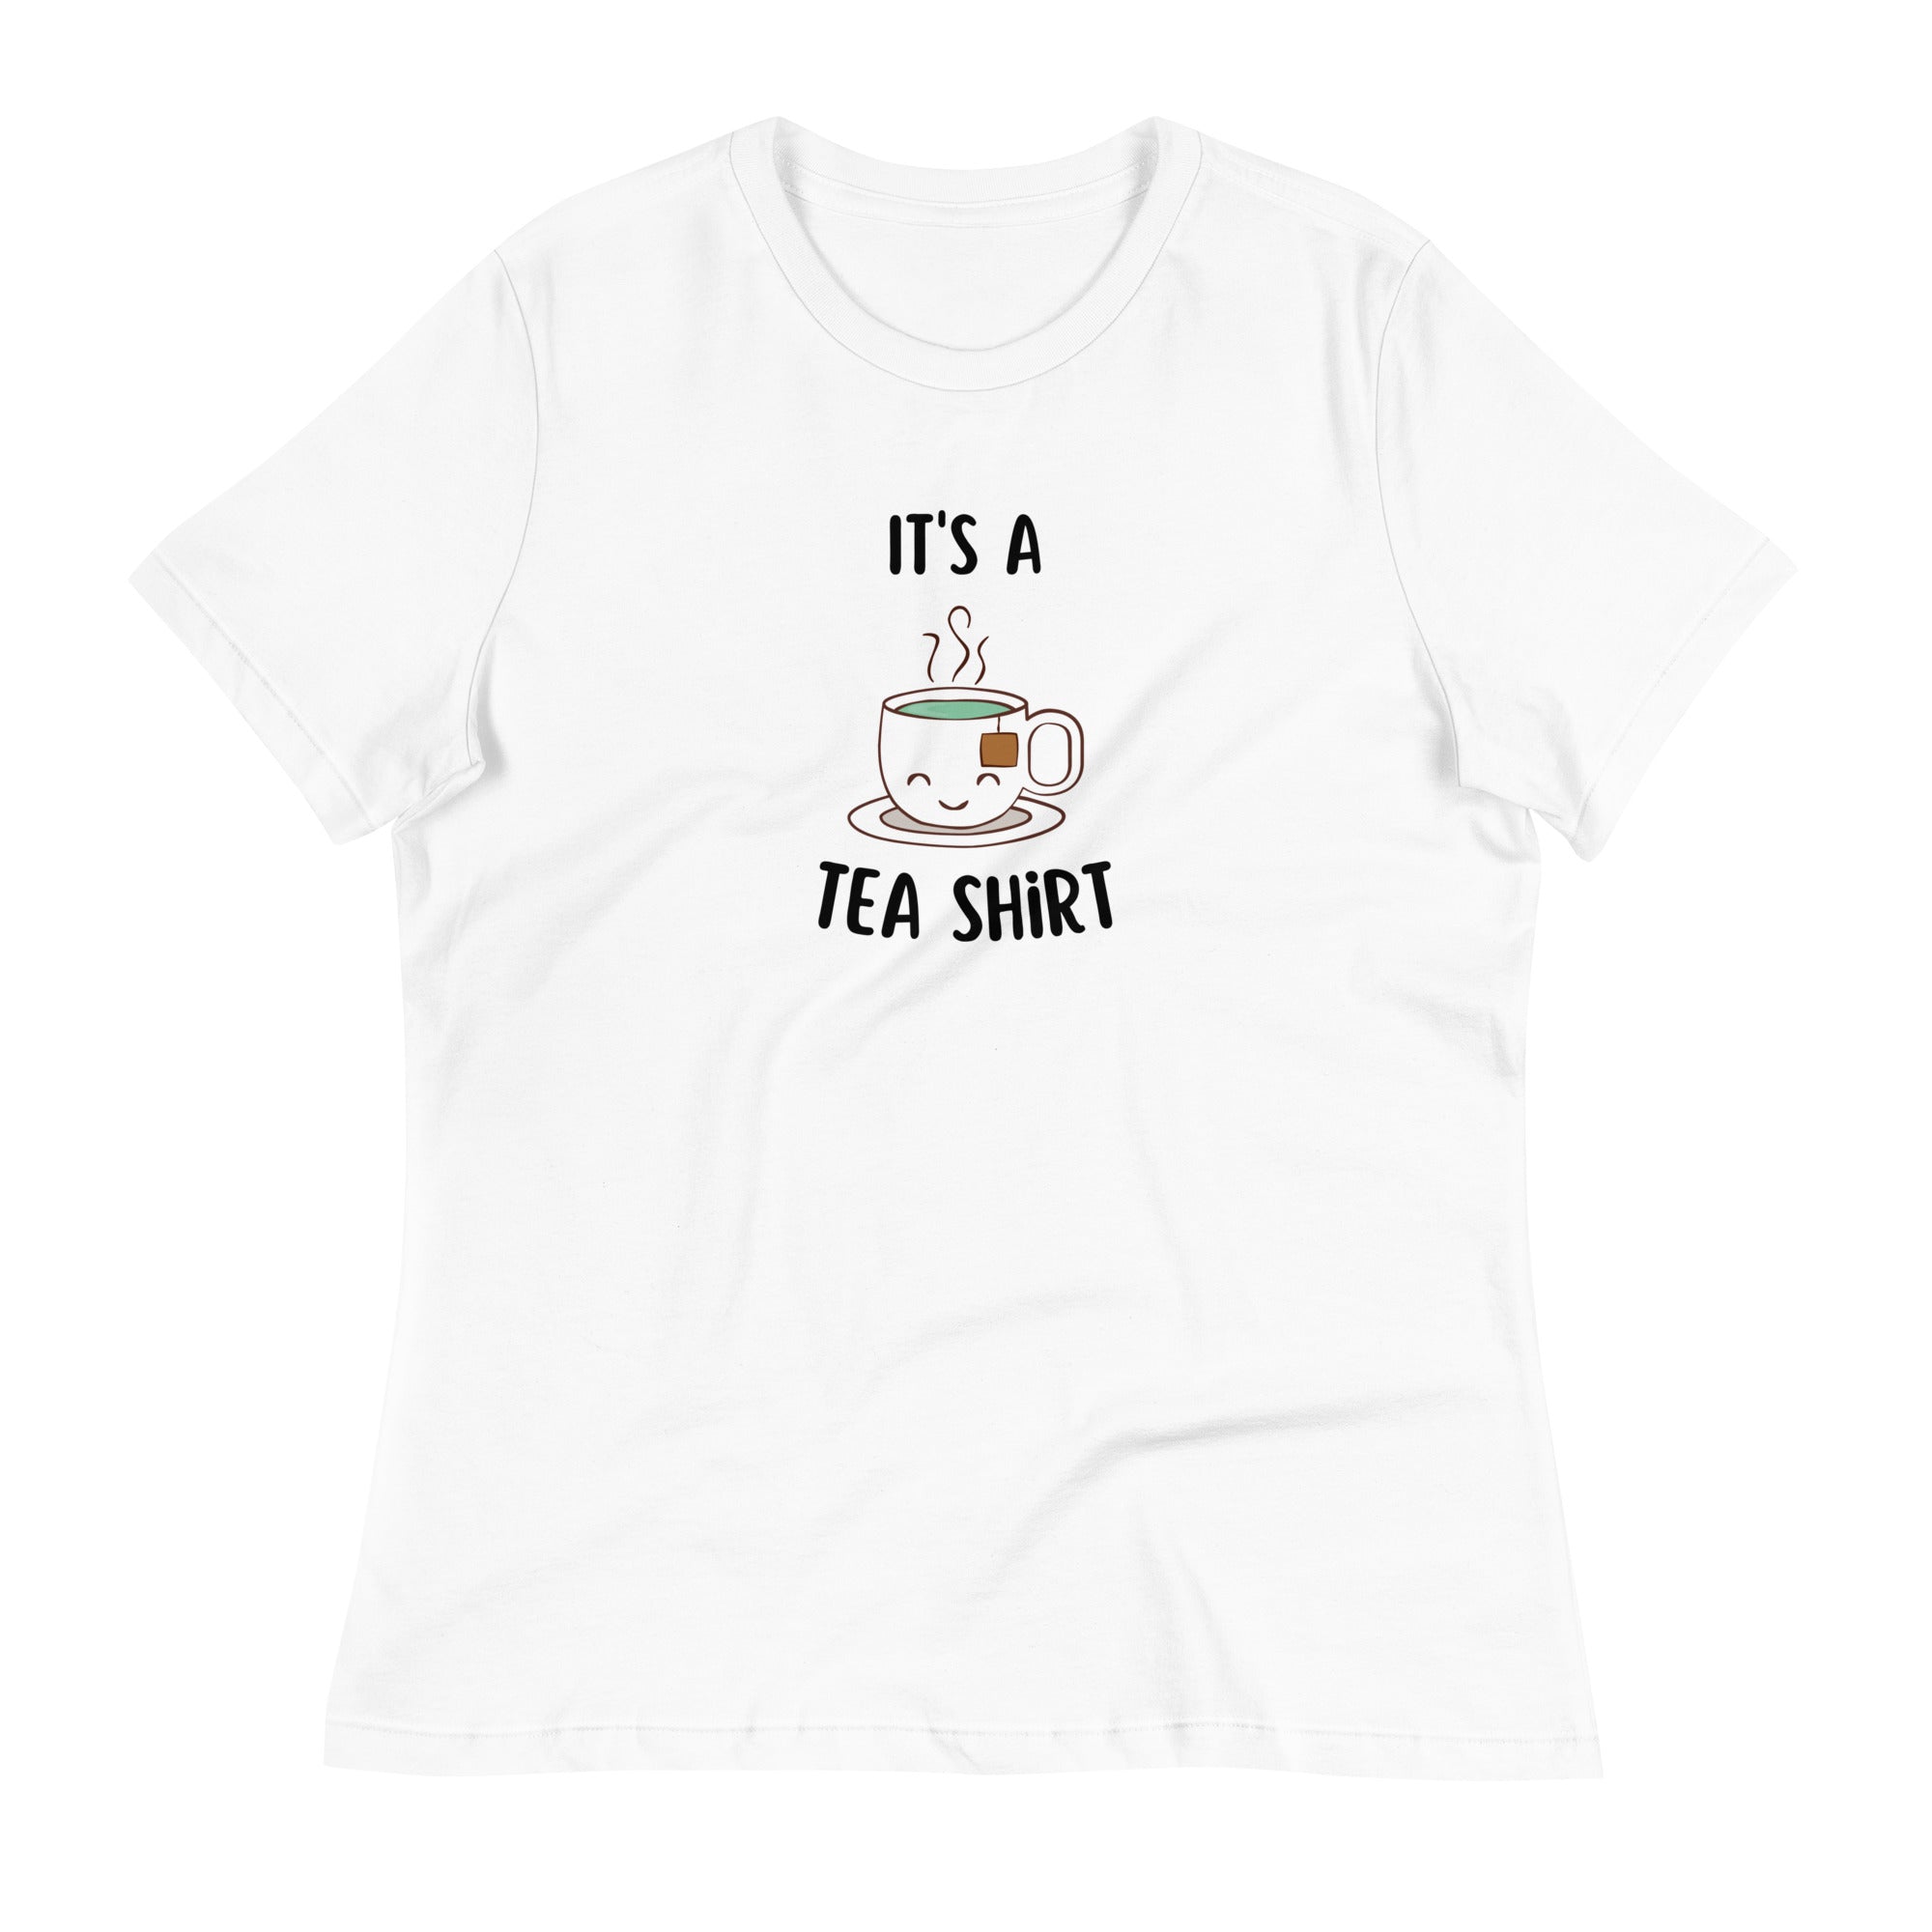 It's A Tea Shirt Women's Relaxed T-Shirt